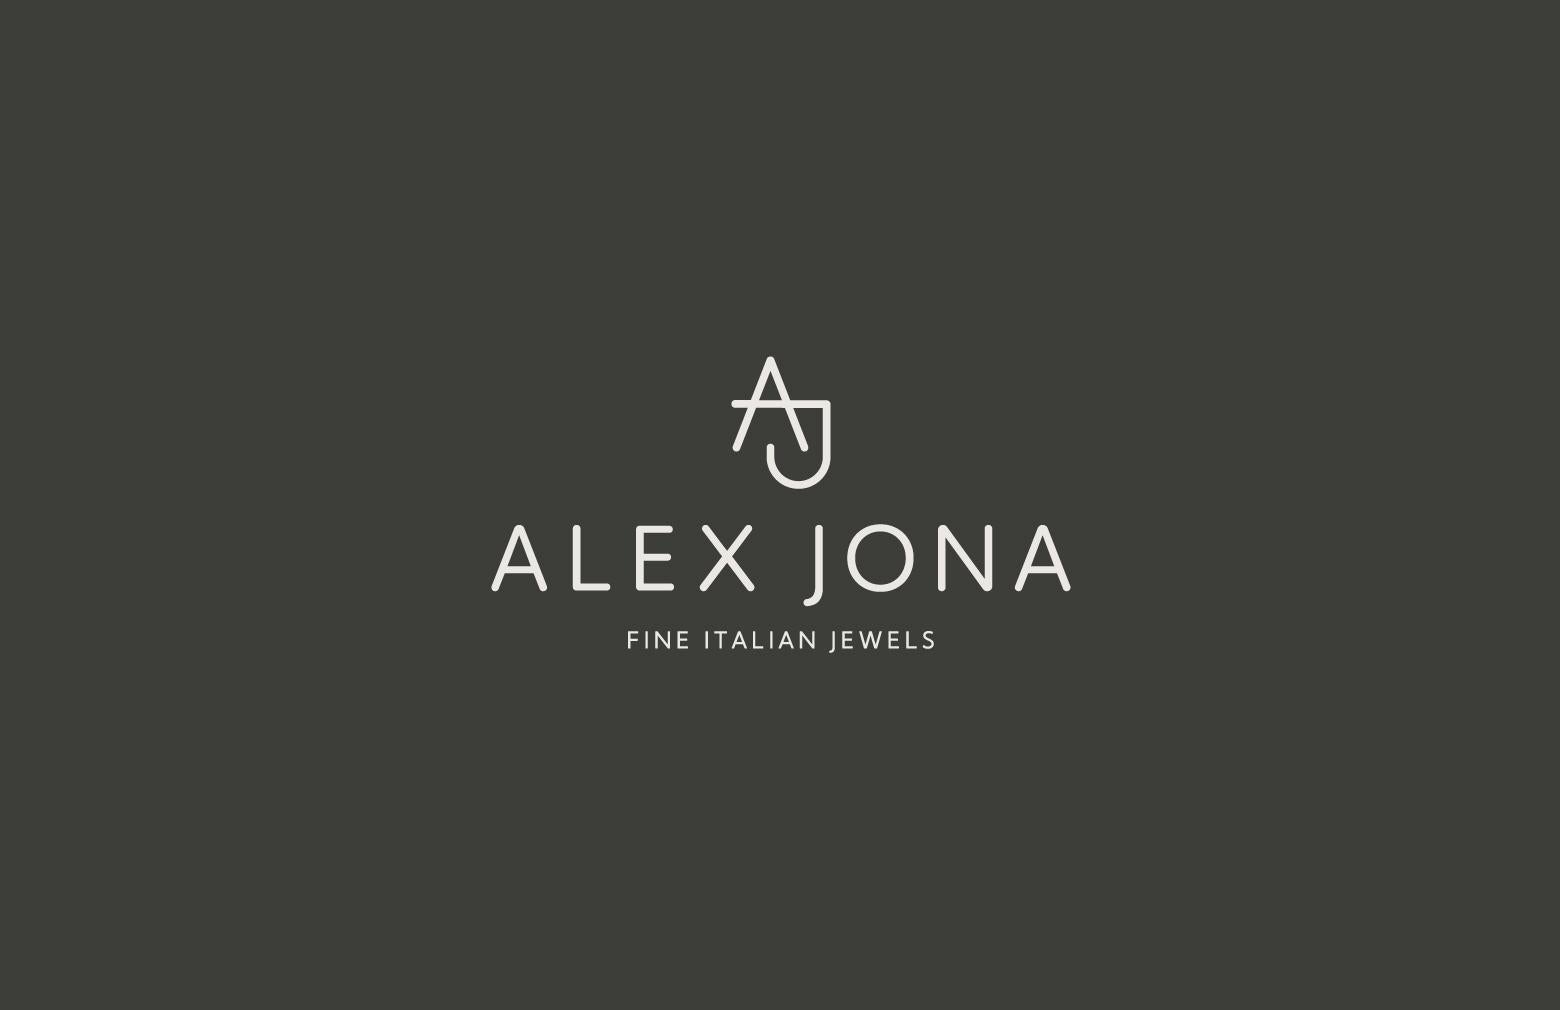 Alex Jona Briolette-Cut Black Diamond 18 Karat White Gold Link Chain Necklace For Sale 4